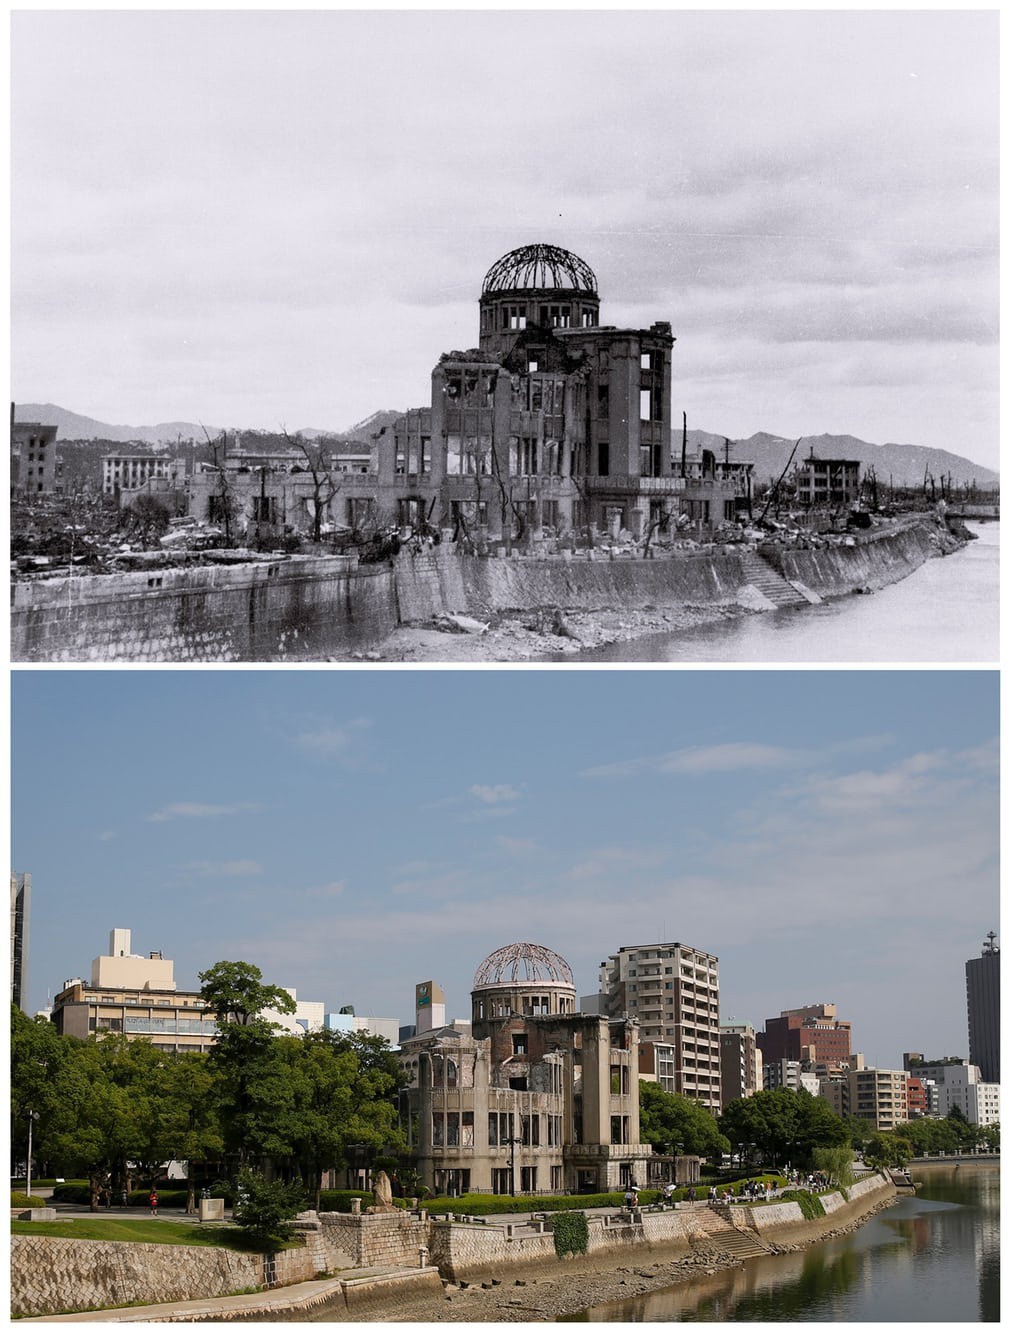 74 năm sau thảm họa bom nguyên tử: Thành phố Hiroshima và Nagasaki hồi sinh mạnh mẽ, người sống sót nhưng mãi chỉ nằm lại ở quá khứ - Ảnh 5.